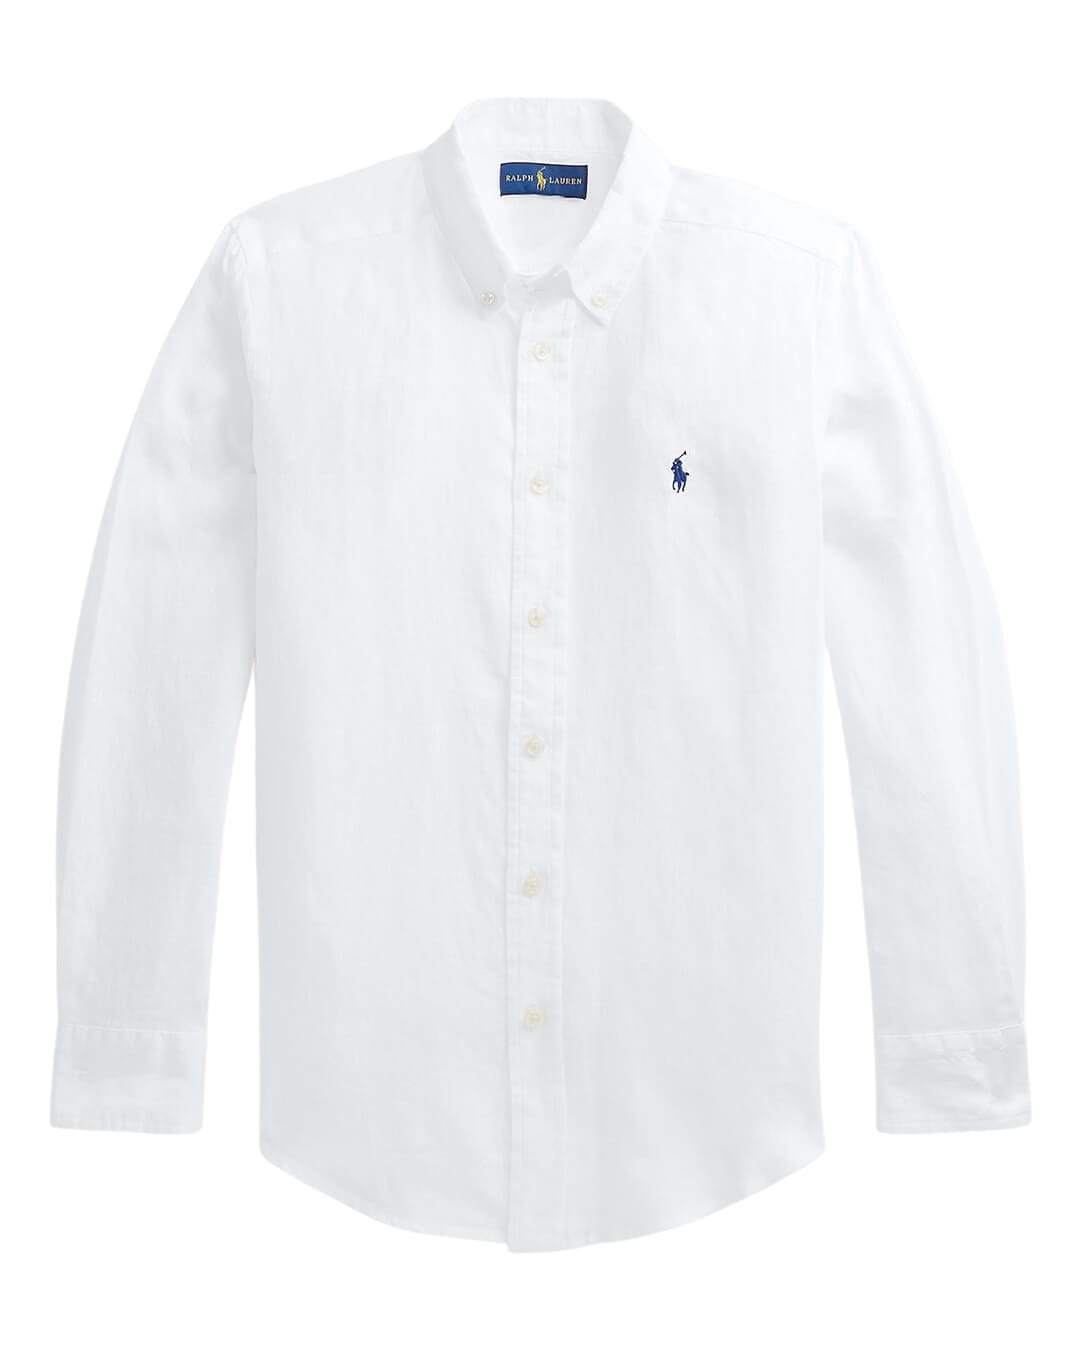 Polo Ralph Lauren Shirts Boys Polo Ralph Lauren Long Sleeved White Linen Shirt